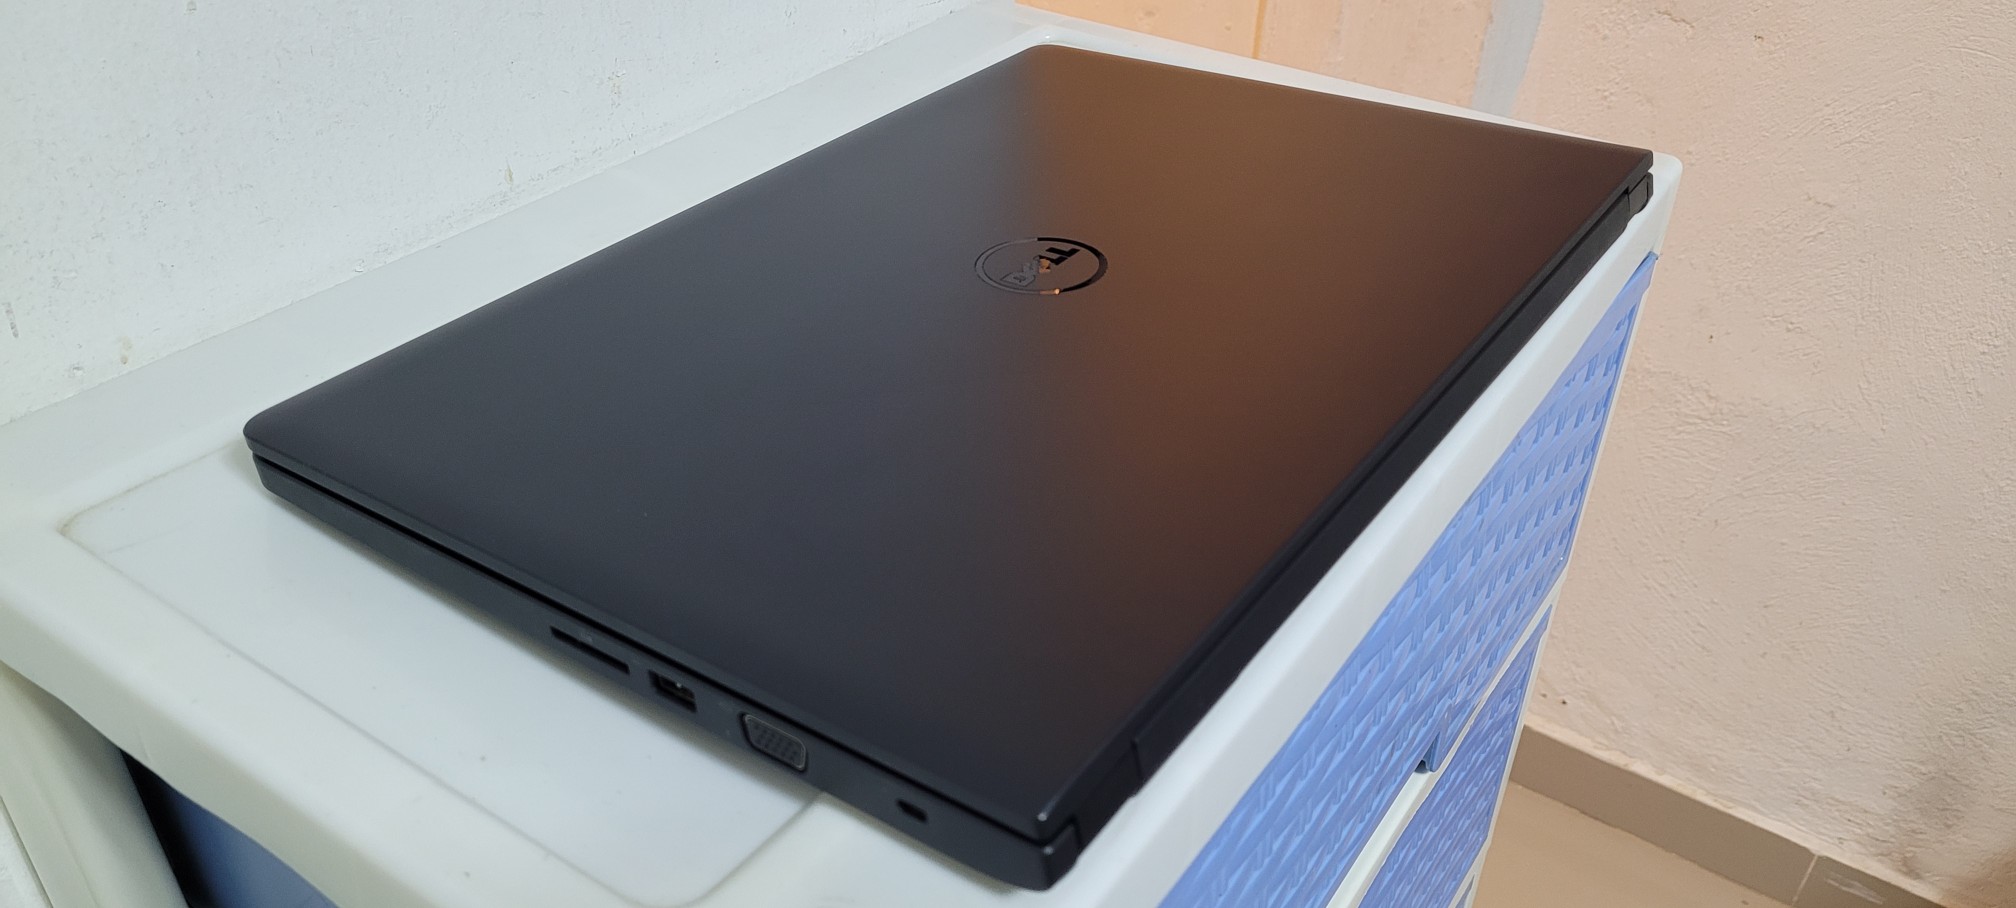 computadoras y laptops - Dell latitude 17 Pulg Core i5 8va Gen Ram 8gb ddr4 Disco 256gb Solido hd 2